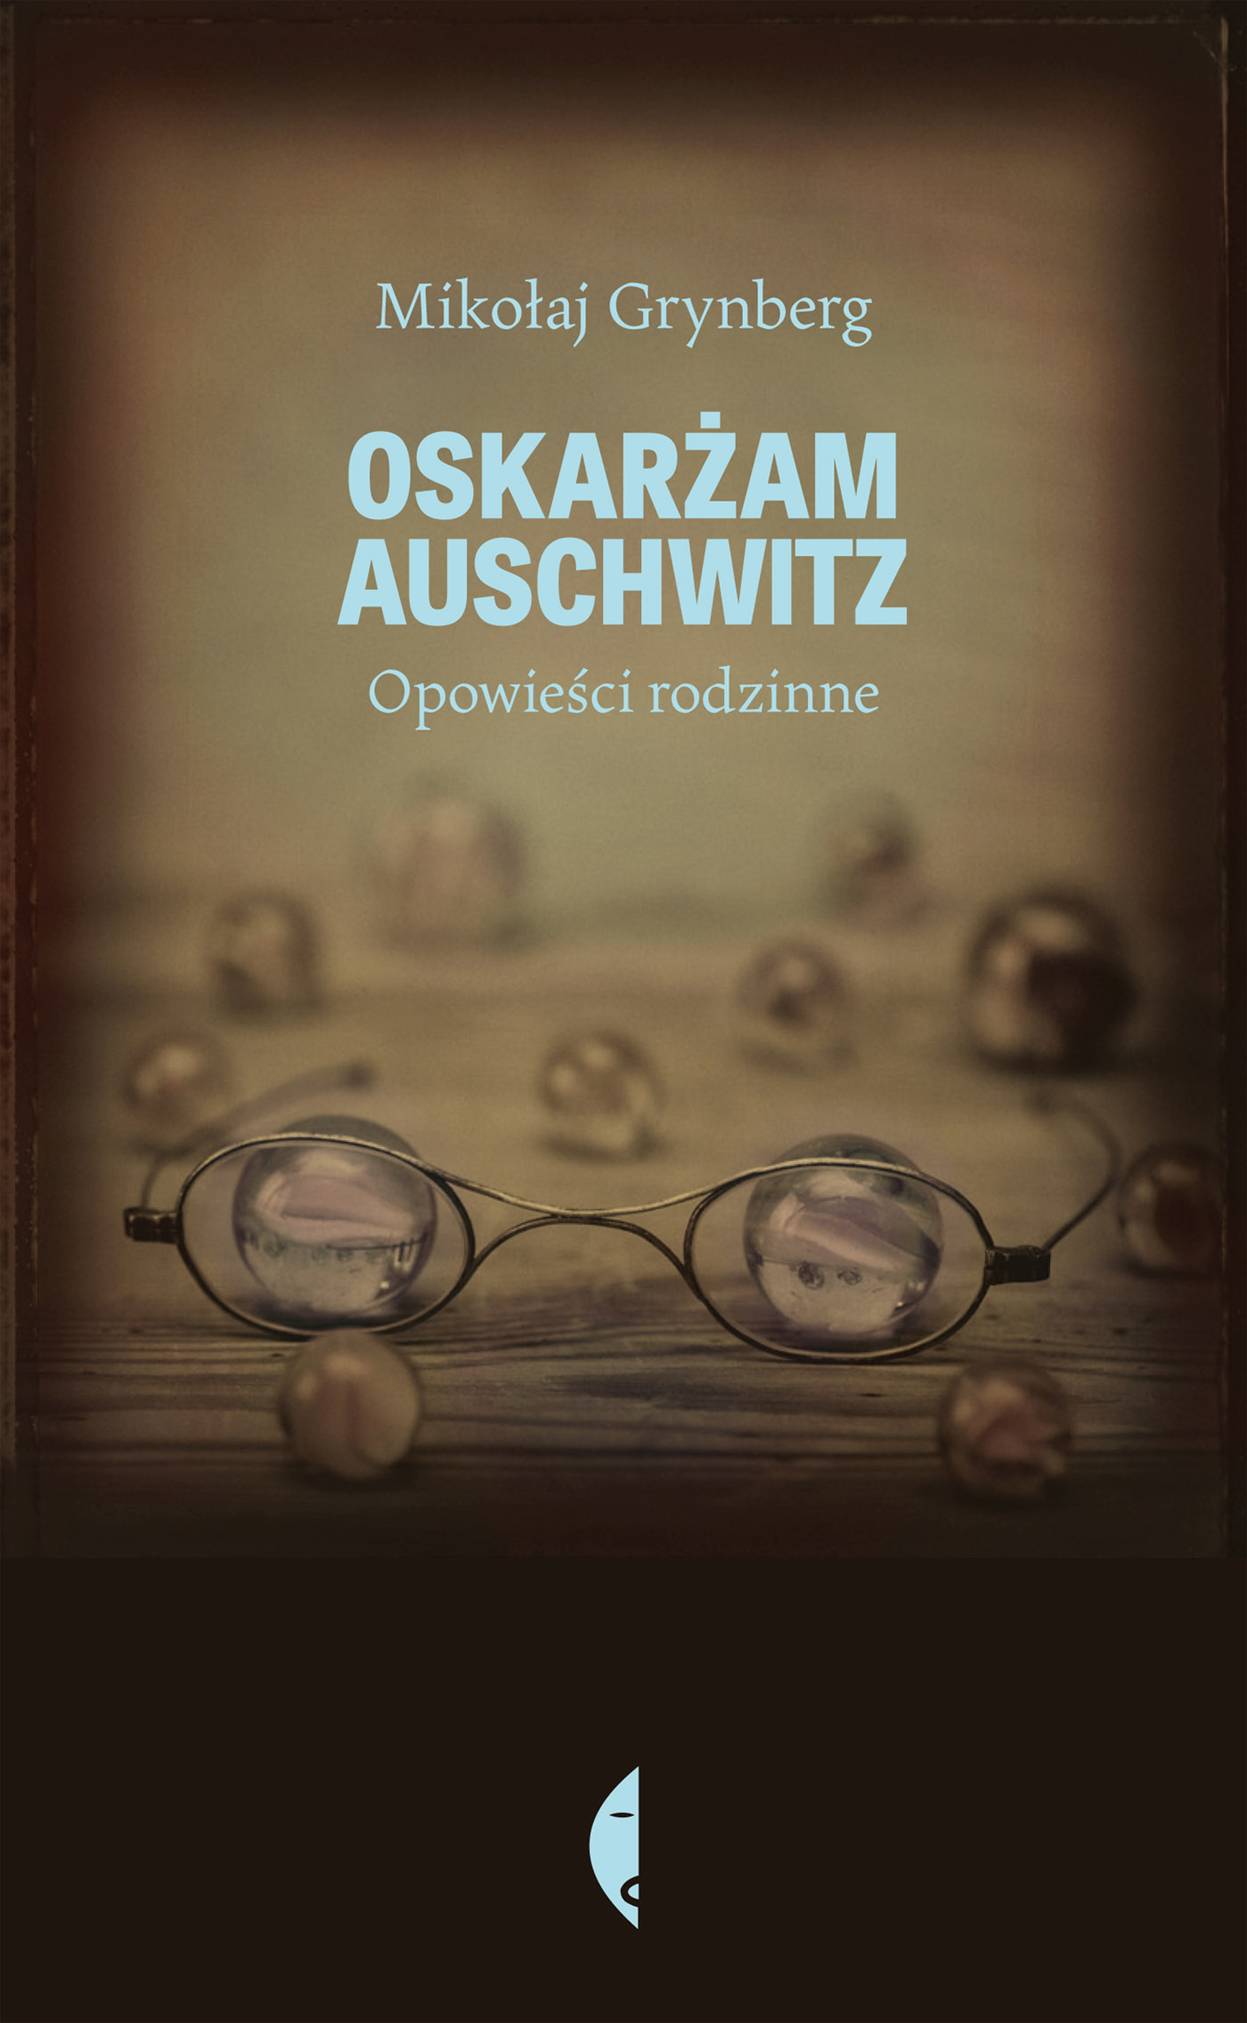 Mikołaj Grynberg, „Oskarżam Auschwitz. Opowieści rodzinne” (źródło: materiały prasowe organizatora)